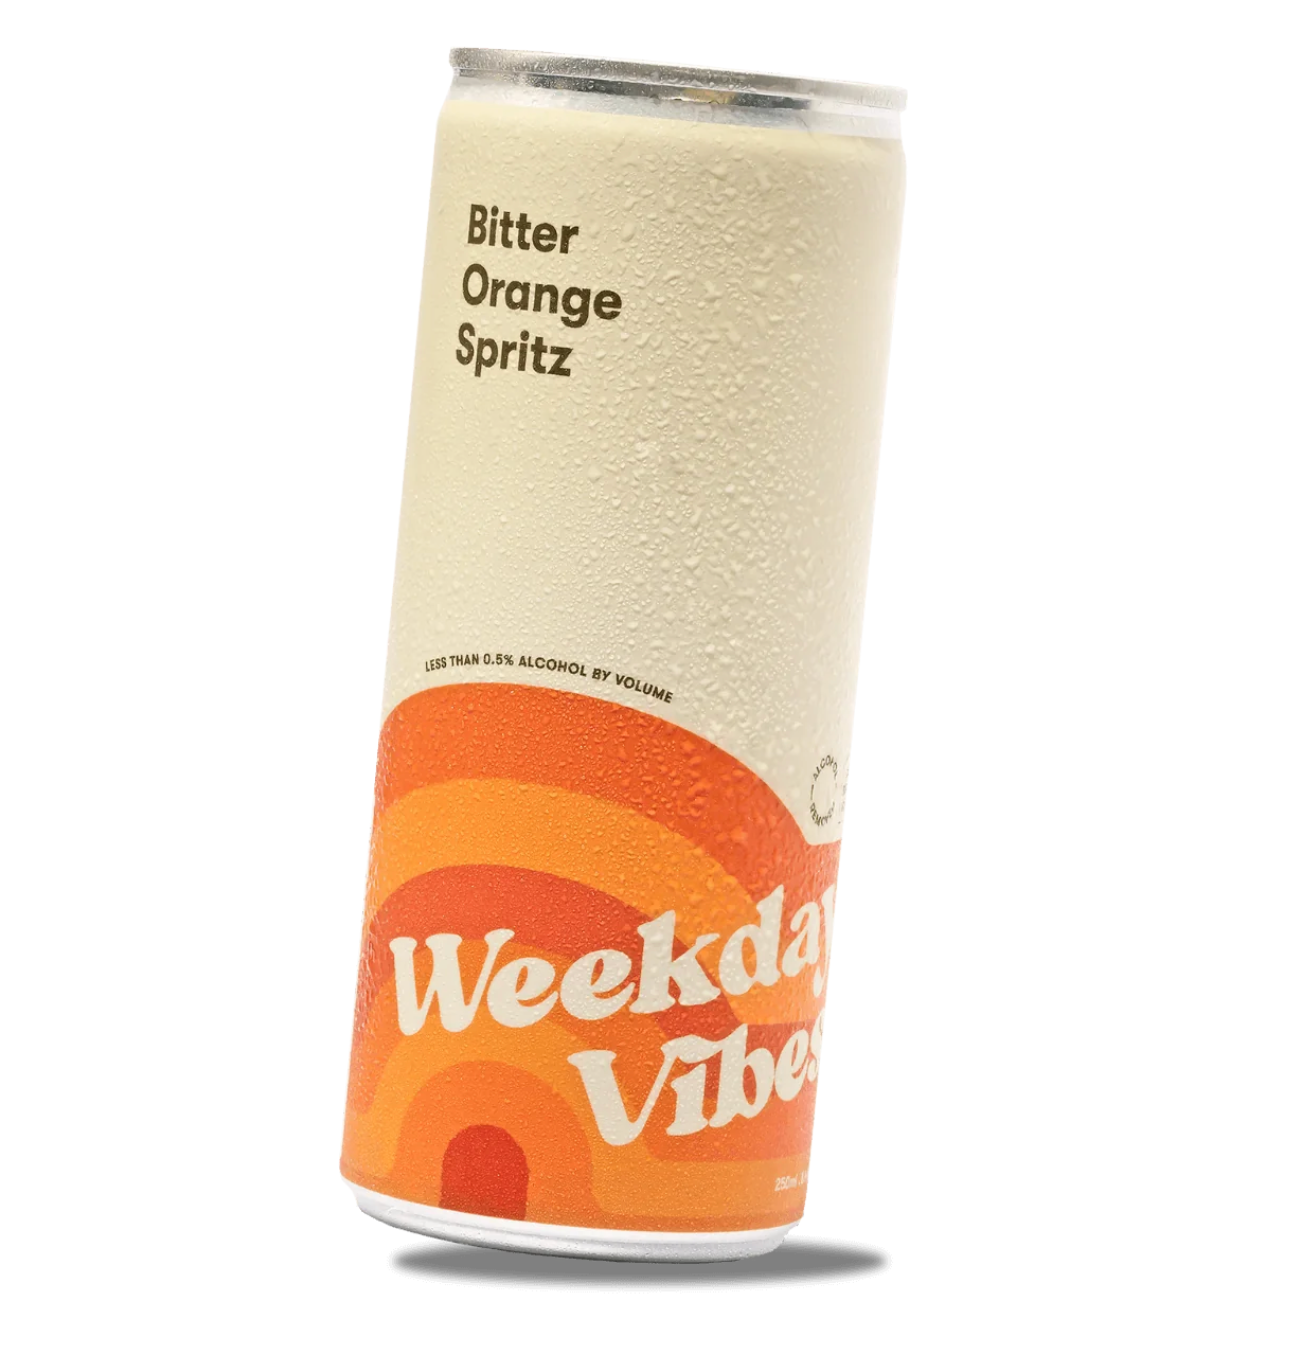 Bitter Orange Spritz - Weekday Vibes